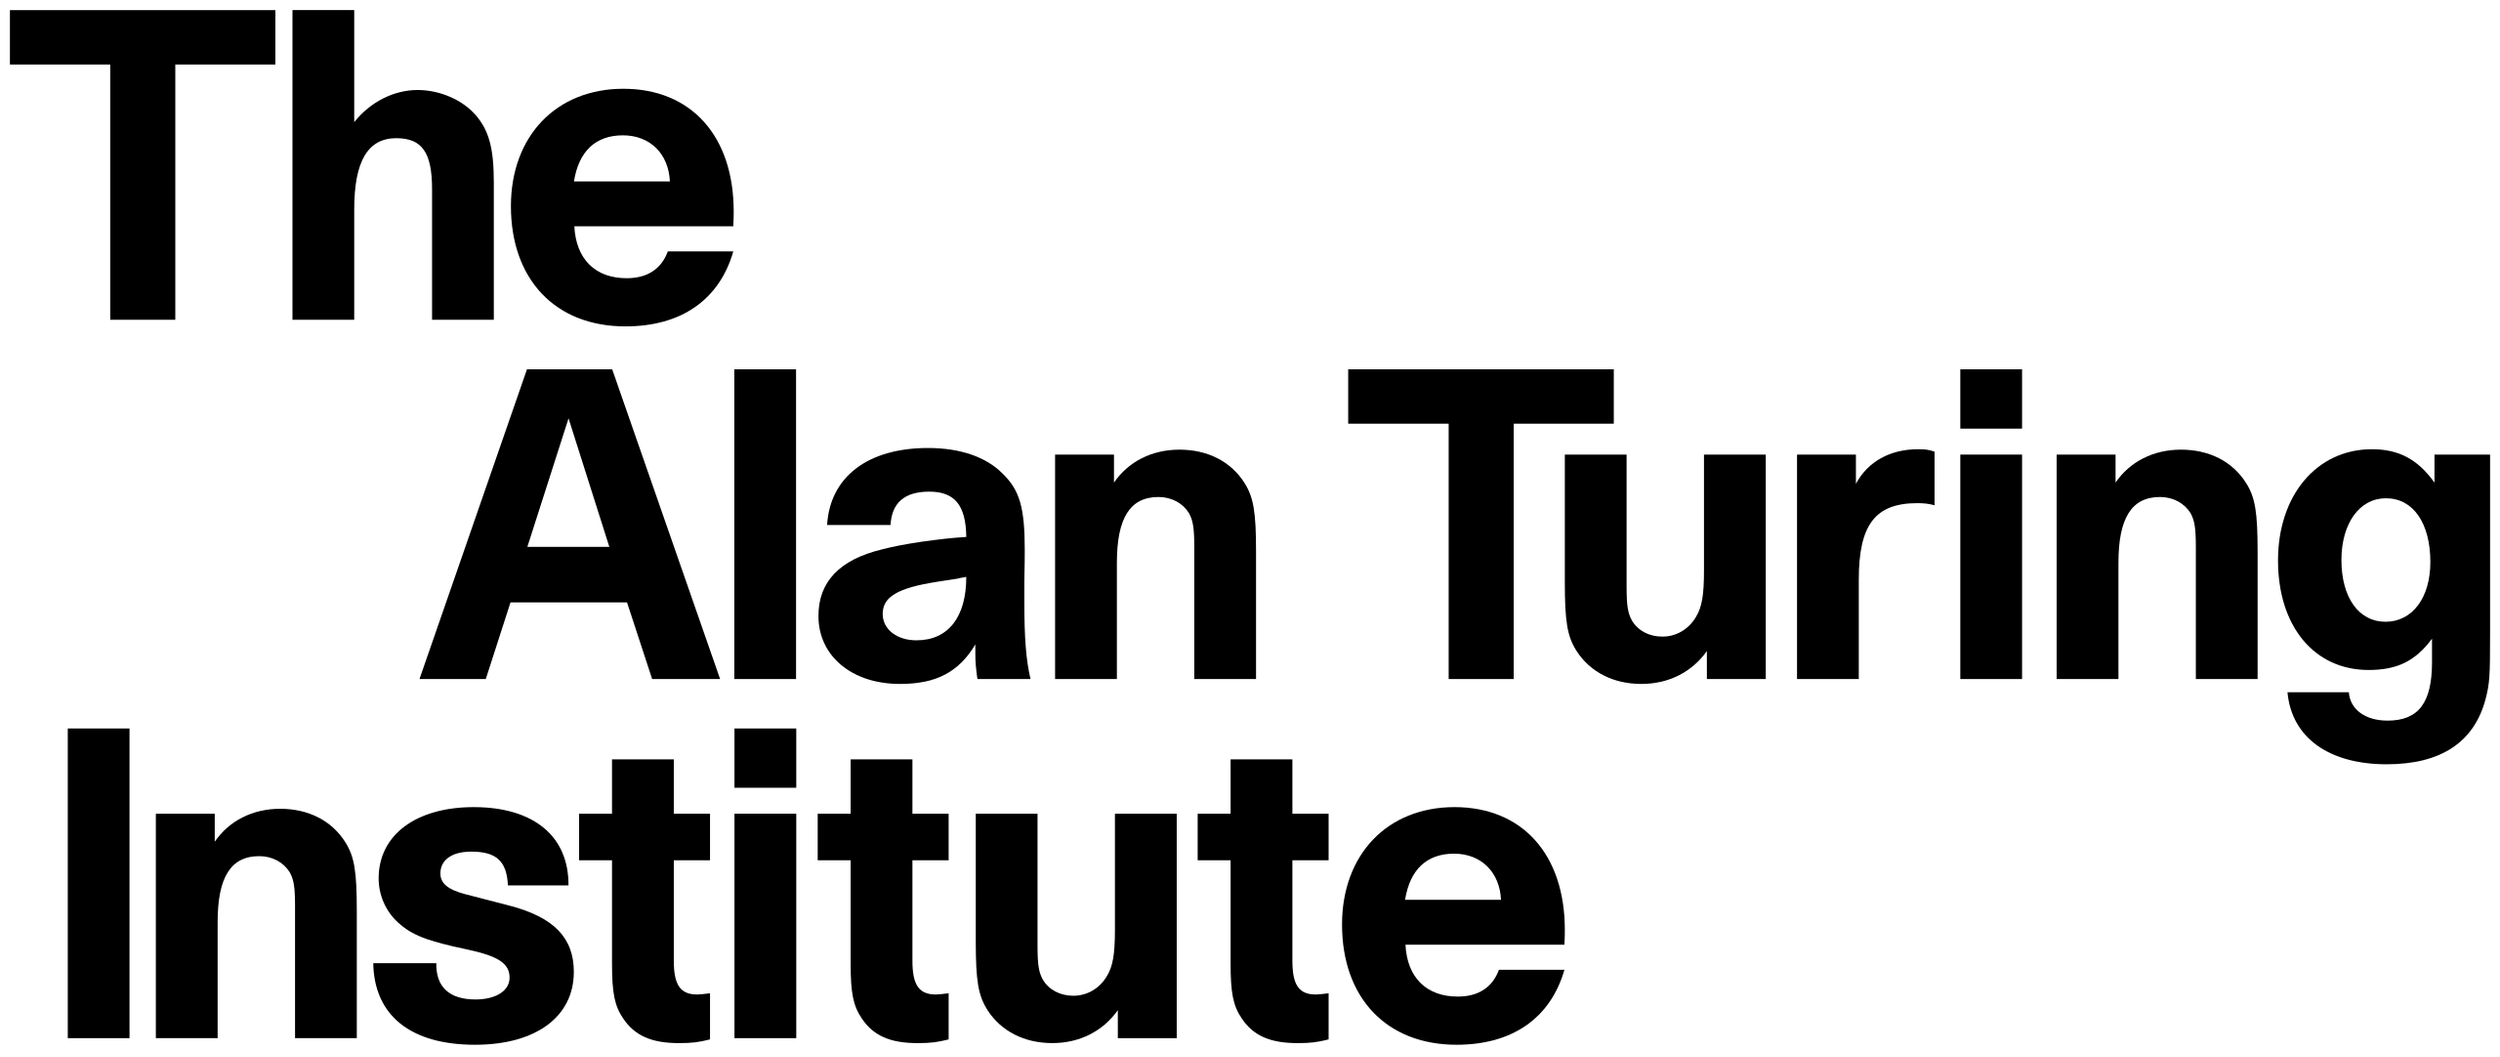 Alan_Turing_Institute_logo.svg.png